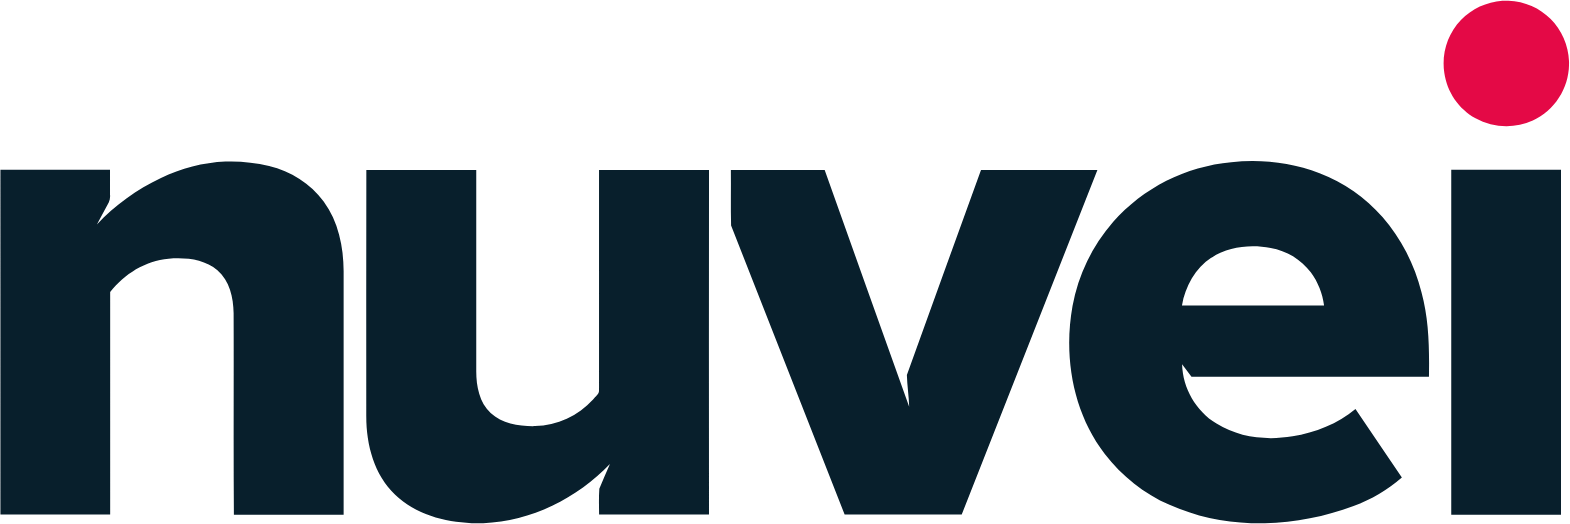 Nuvei logo (PNG transparent)